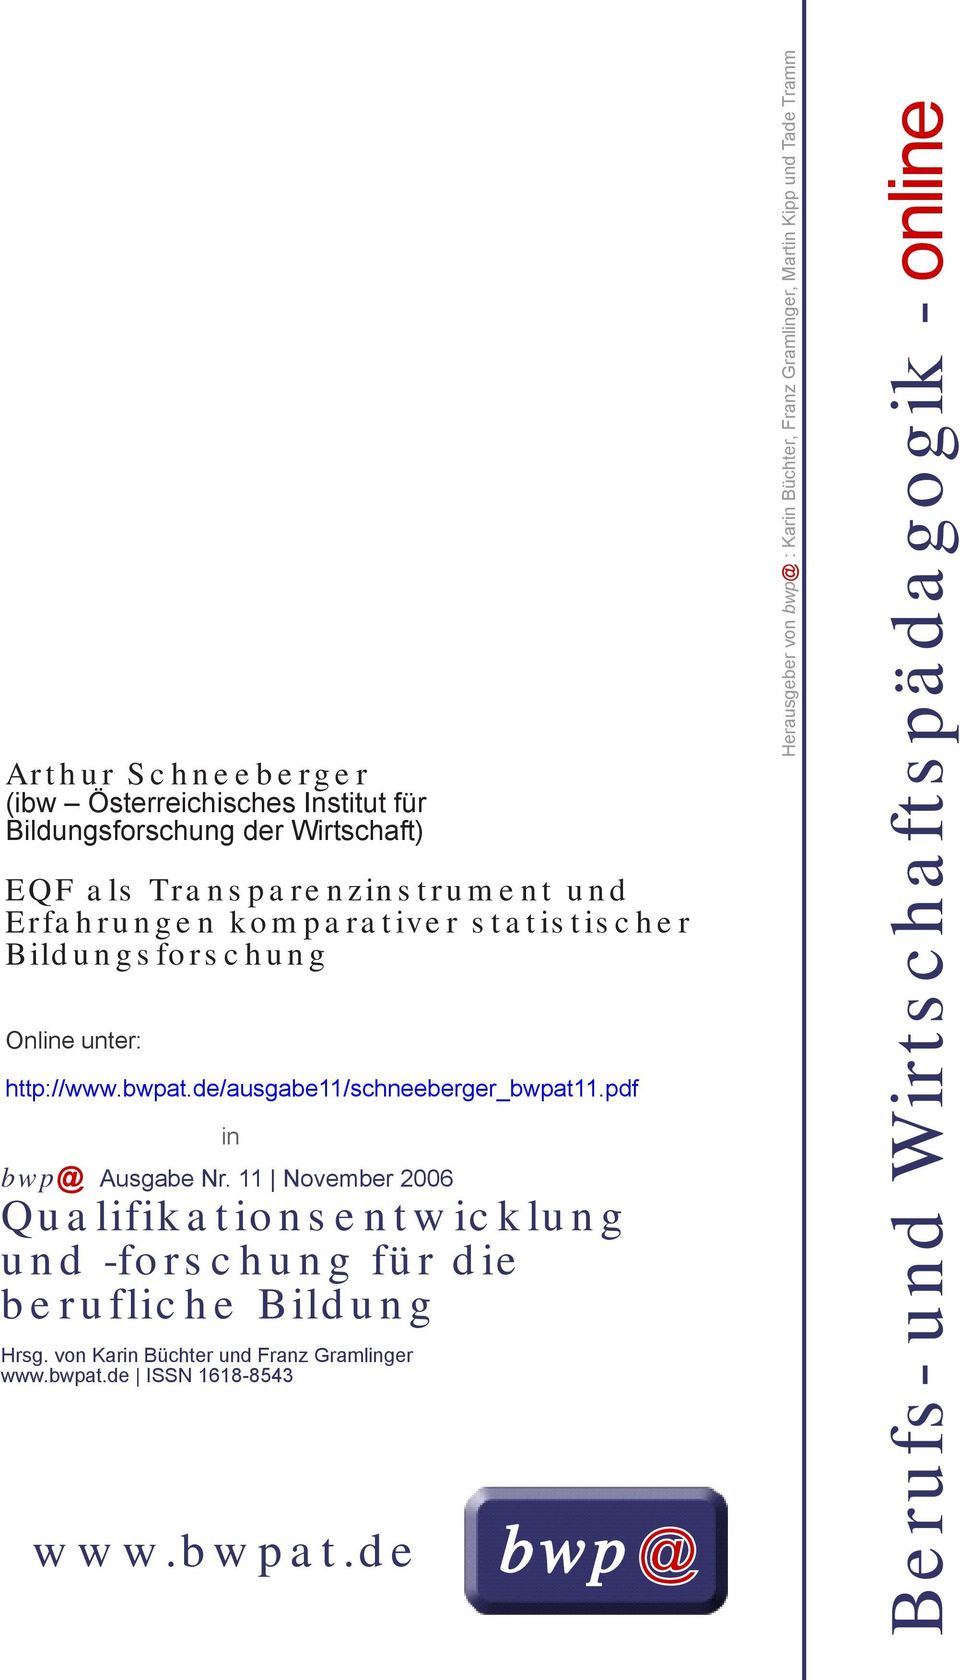 11 November 2006 Qualifikationsentwicklung und -forschung für die berufliche Bildung Hrsg. von Karin Büchter und Franz Gramlinger www.bwpat.